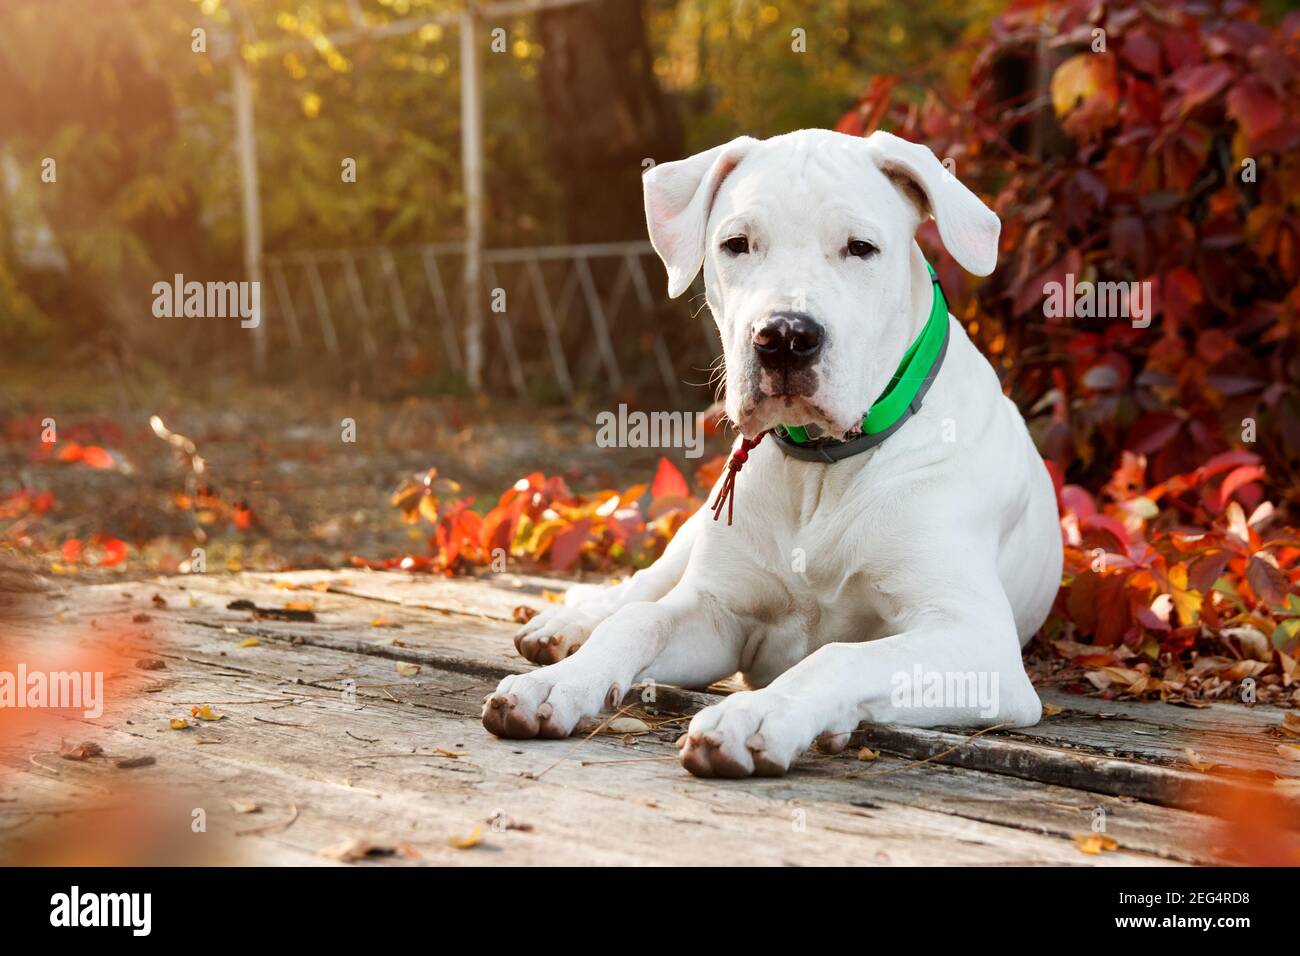 Dogo argentino liegt und schaut auf die Kamera im Herbstpark in der Nähe von roten Blättern. Hunde Hintergrund Stockfoto